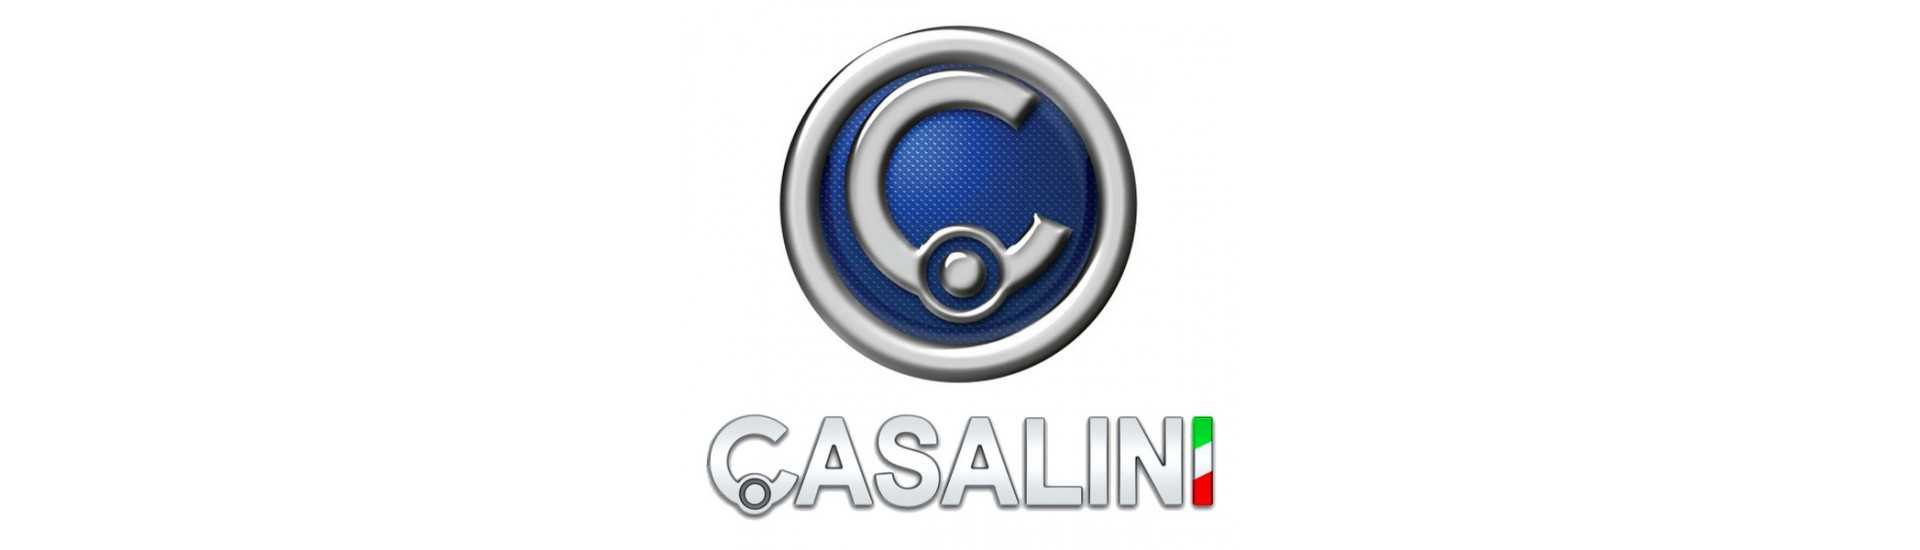 Reversão de cabo ao melhor preço para o carro sem uma permissão Casalini